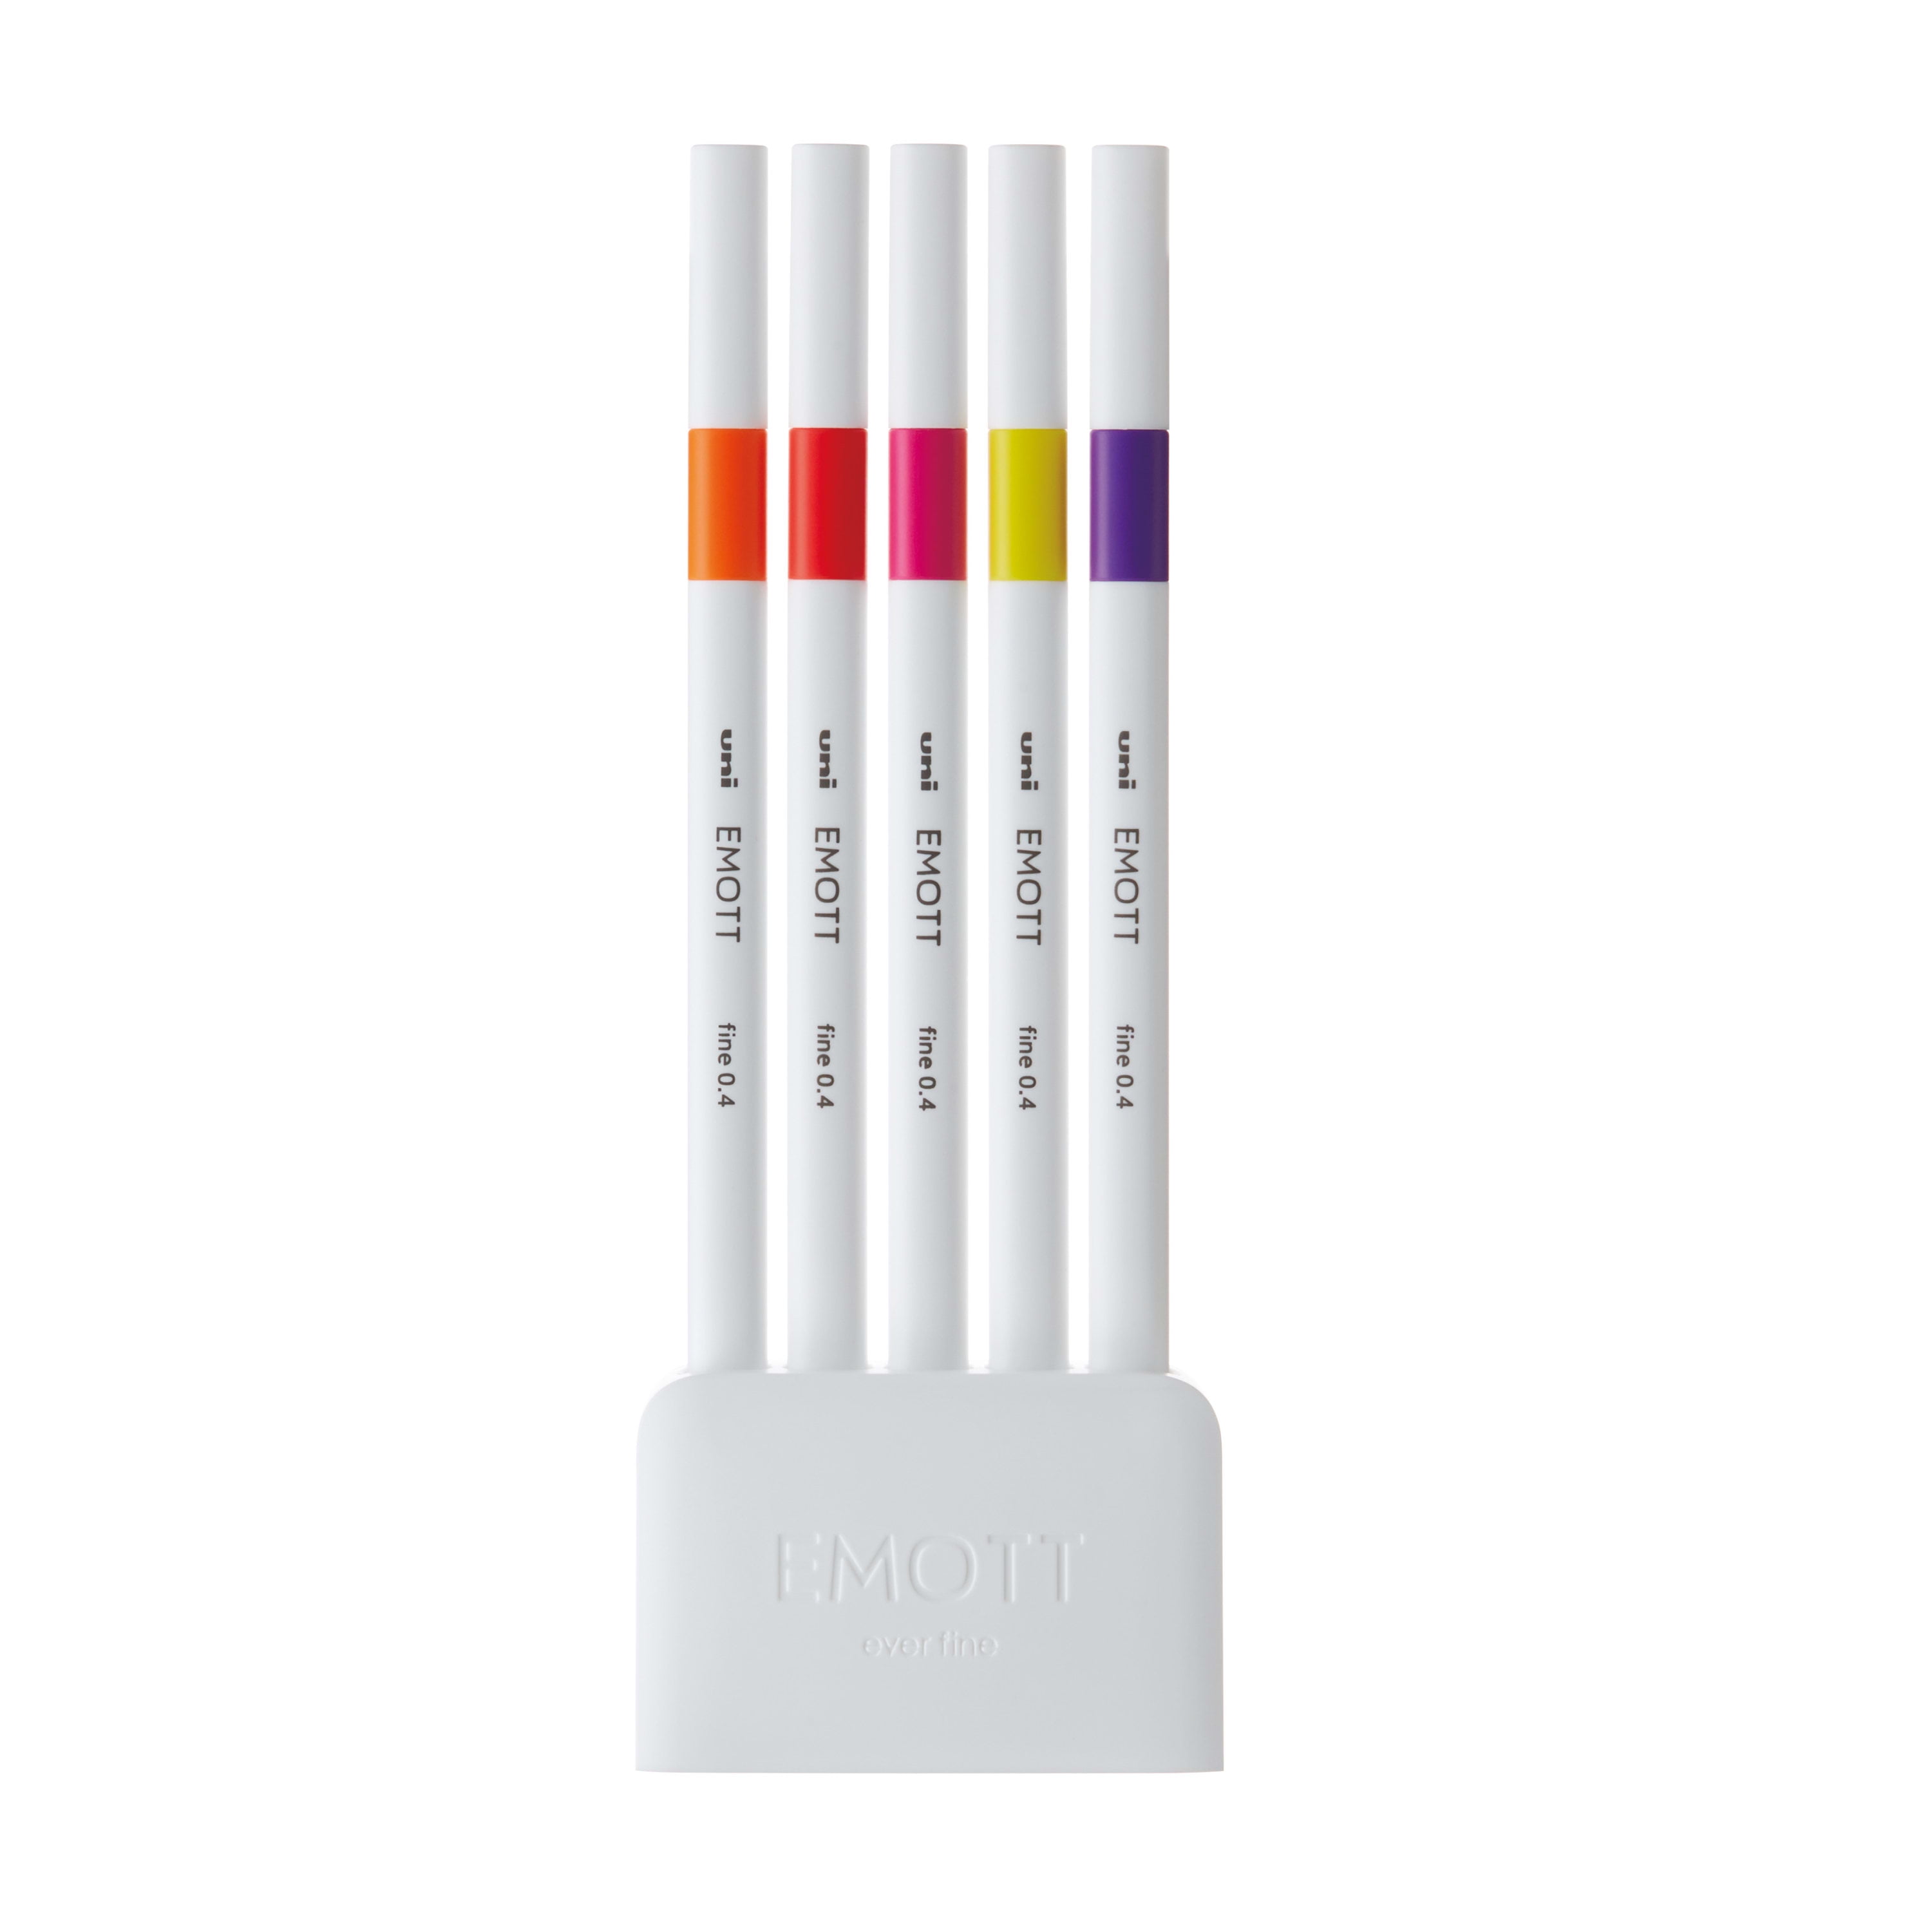 Uniball Emott Fineliner Pen 40 Pack, Office Supplies, School Supplies,  Artist Supplies, Pens, Ballpoint Pen, Colored Pens, Gel Pens, Fine Point